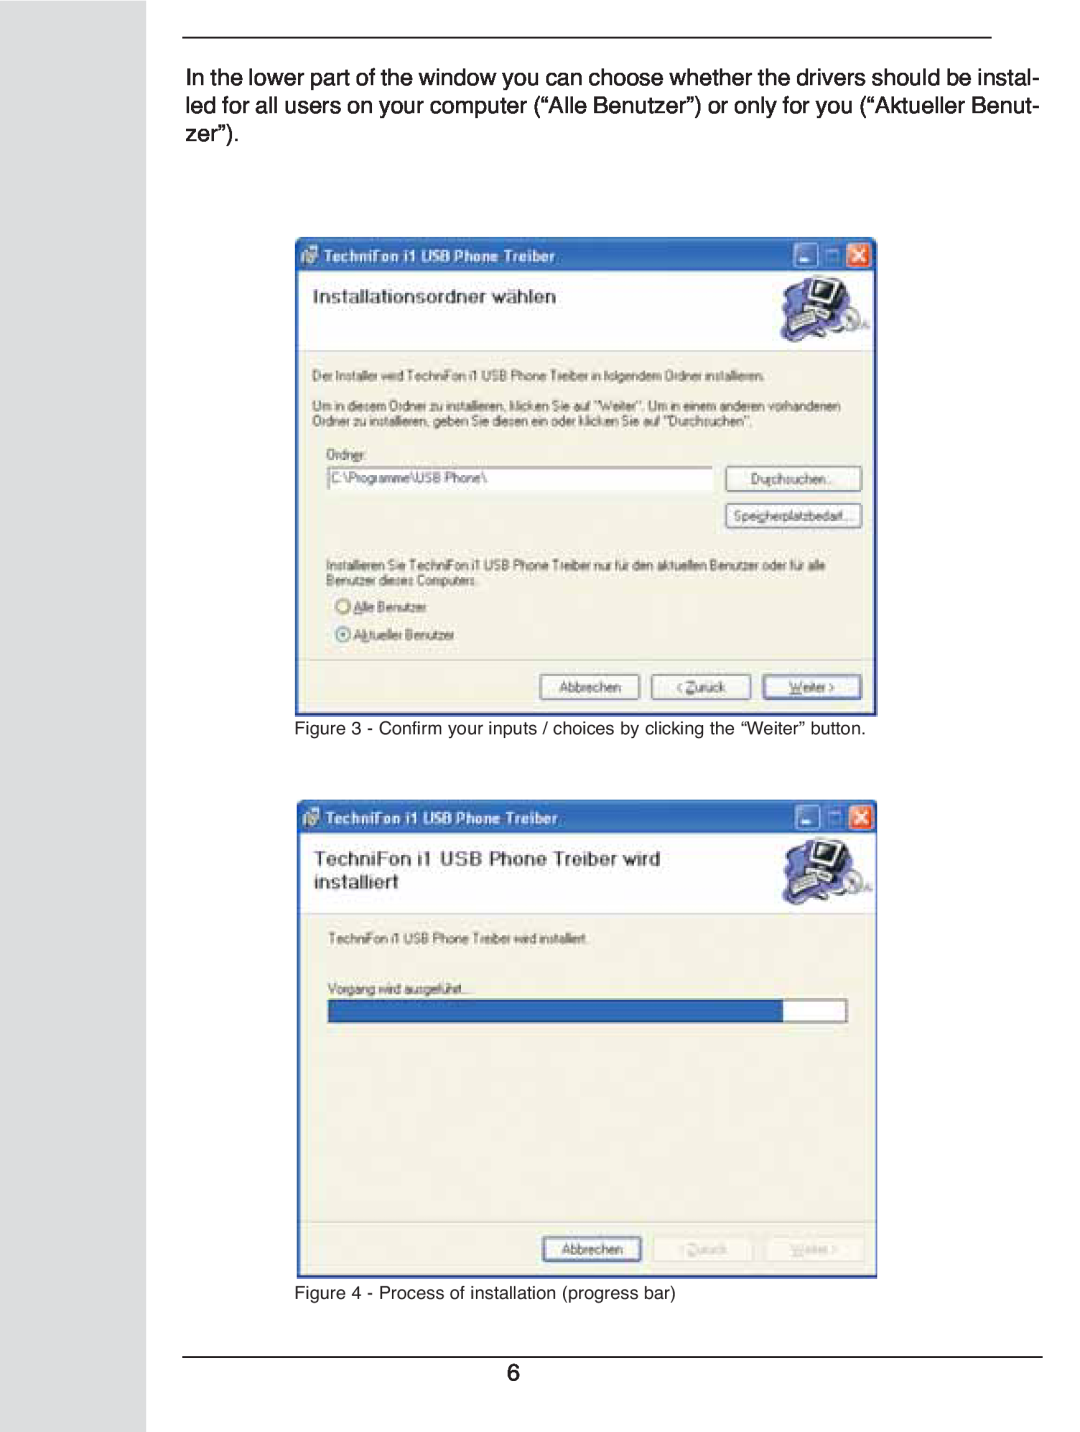 TechniSat i1 user manual Process of installation progress bar 